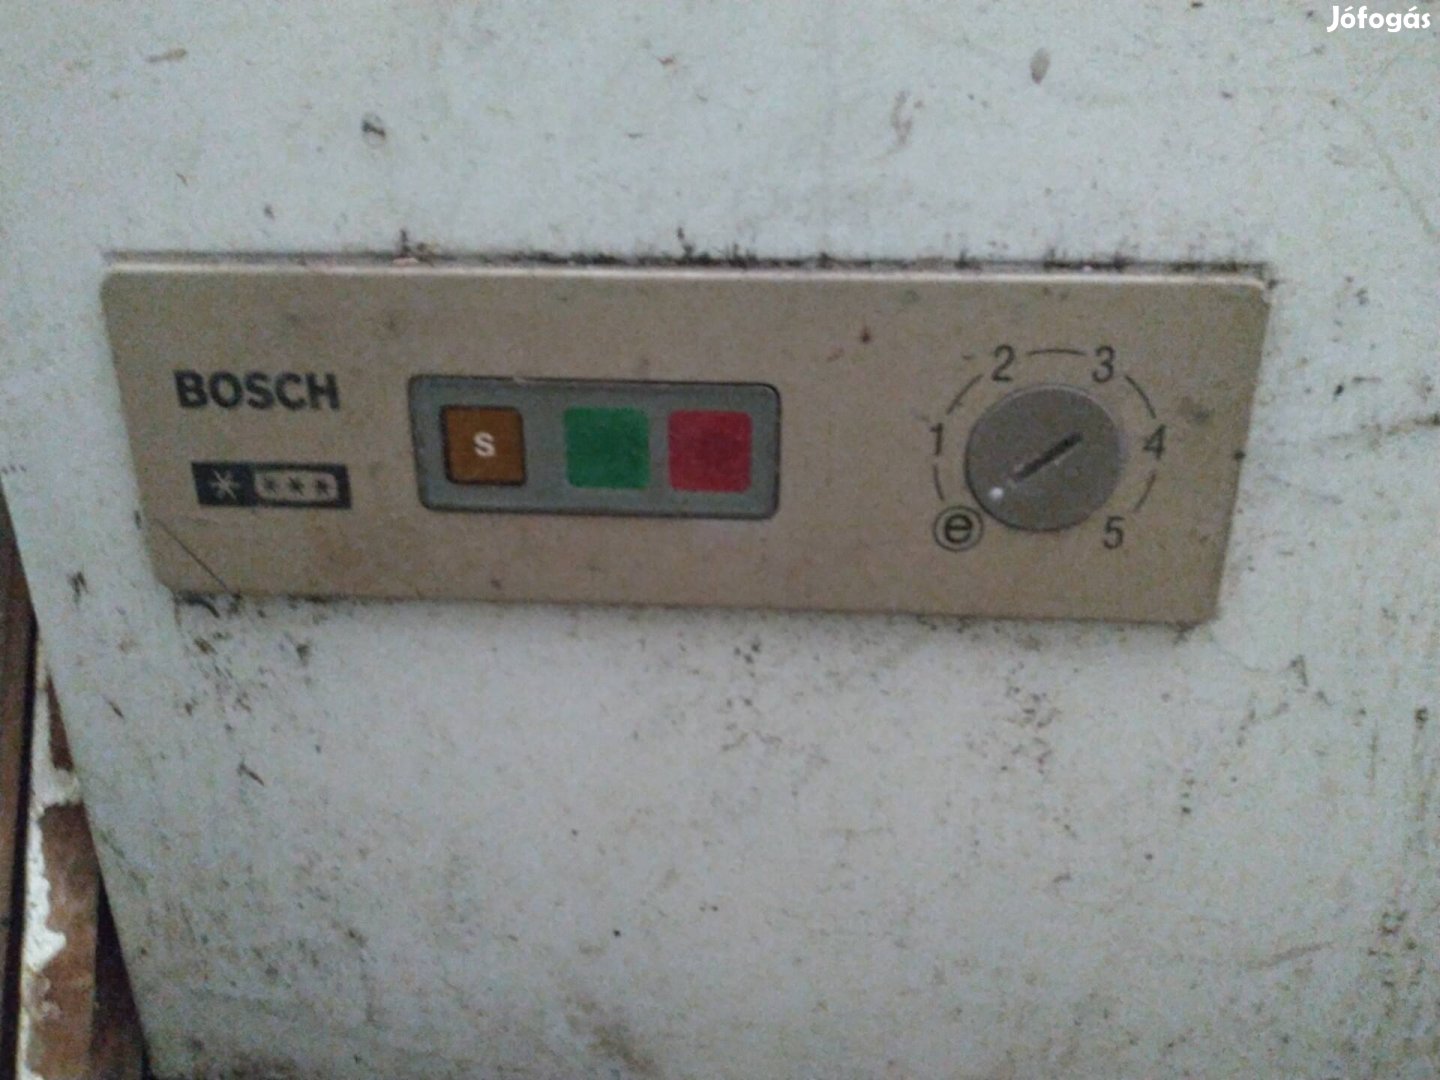 Bosch fagyasztó.T:06301787254